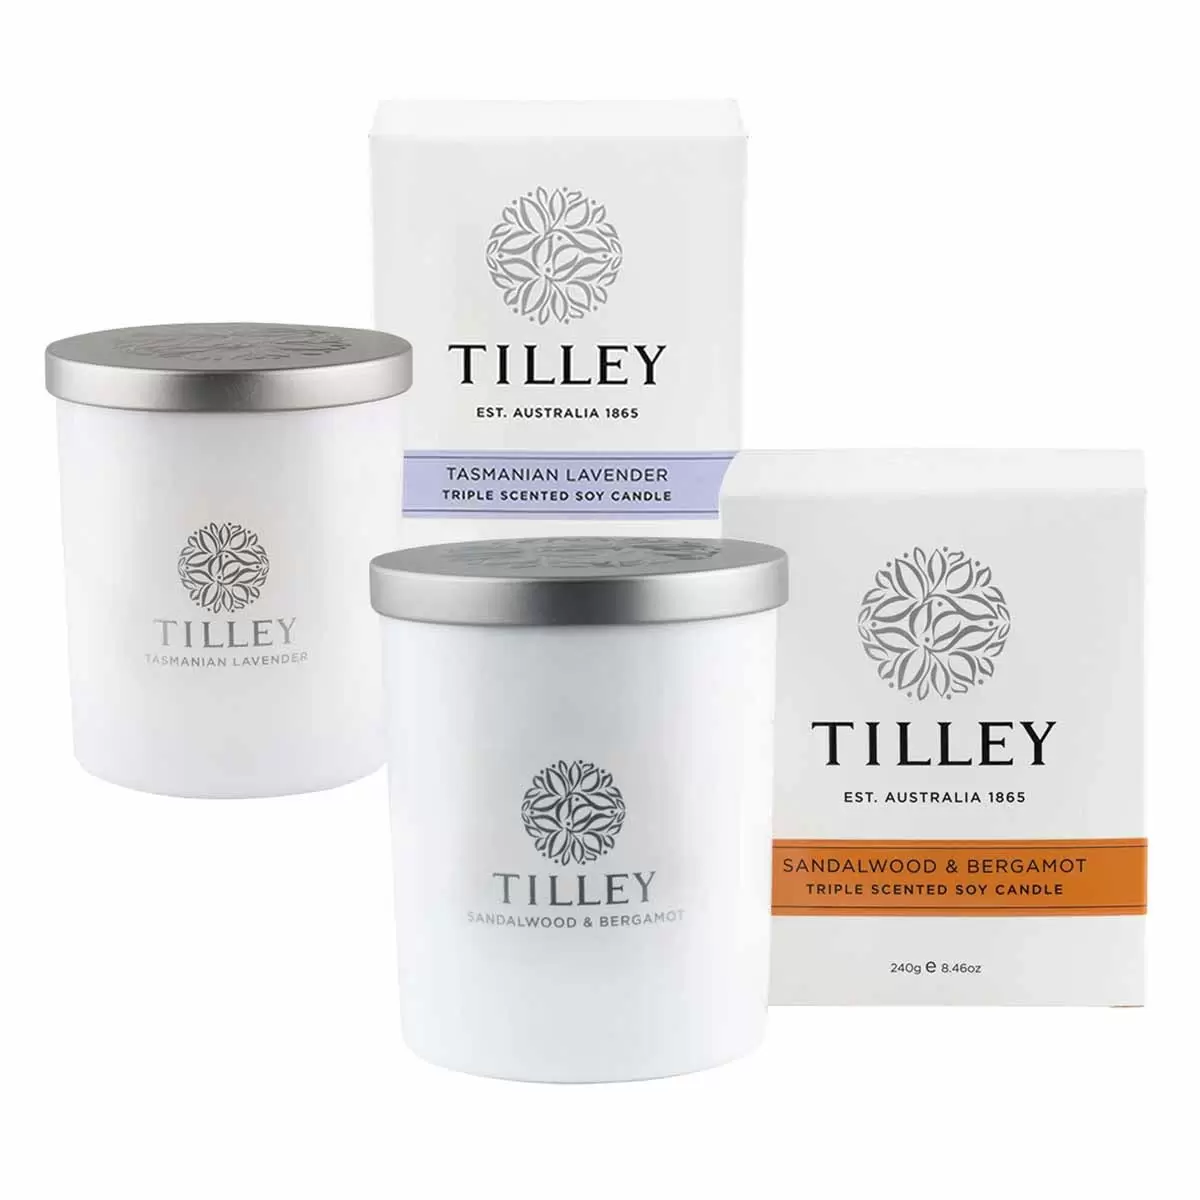 Tilley 微醺大豆香氛蠟燭2入組 塔斯馬尼亞薰衣草 + 檀香與佛手柑